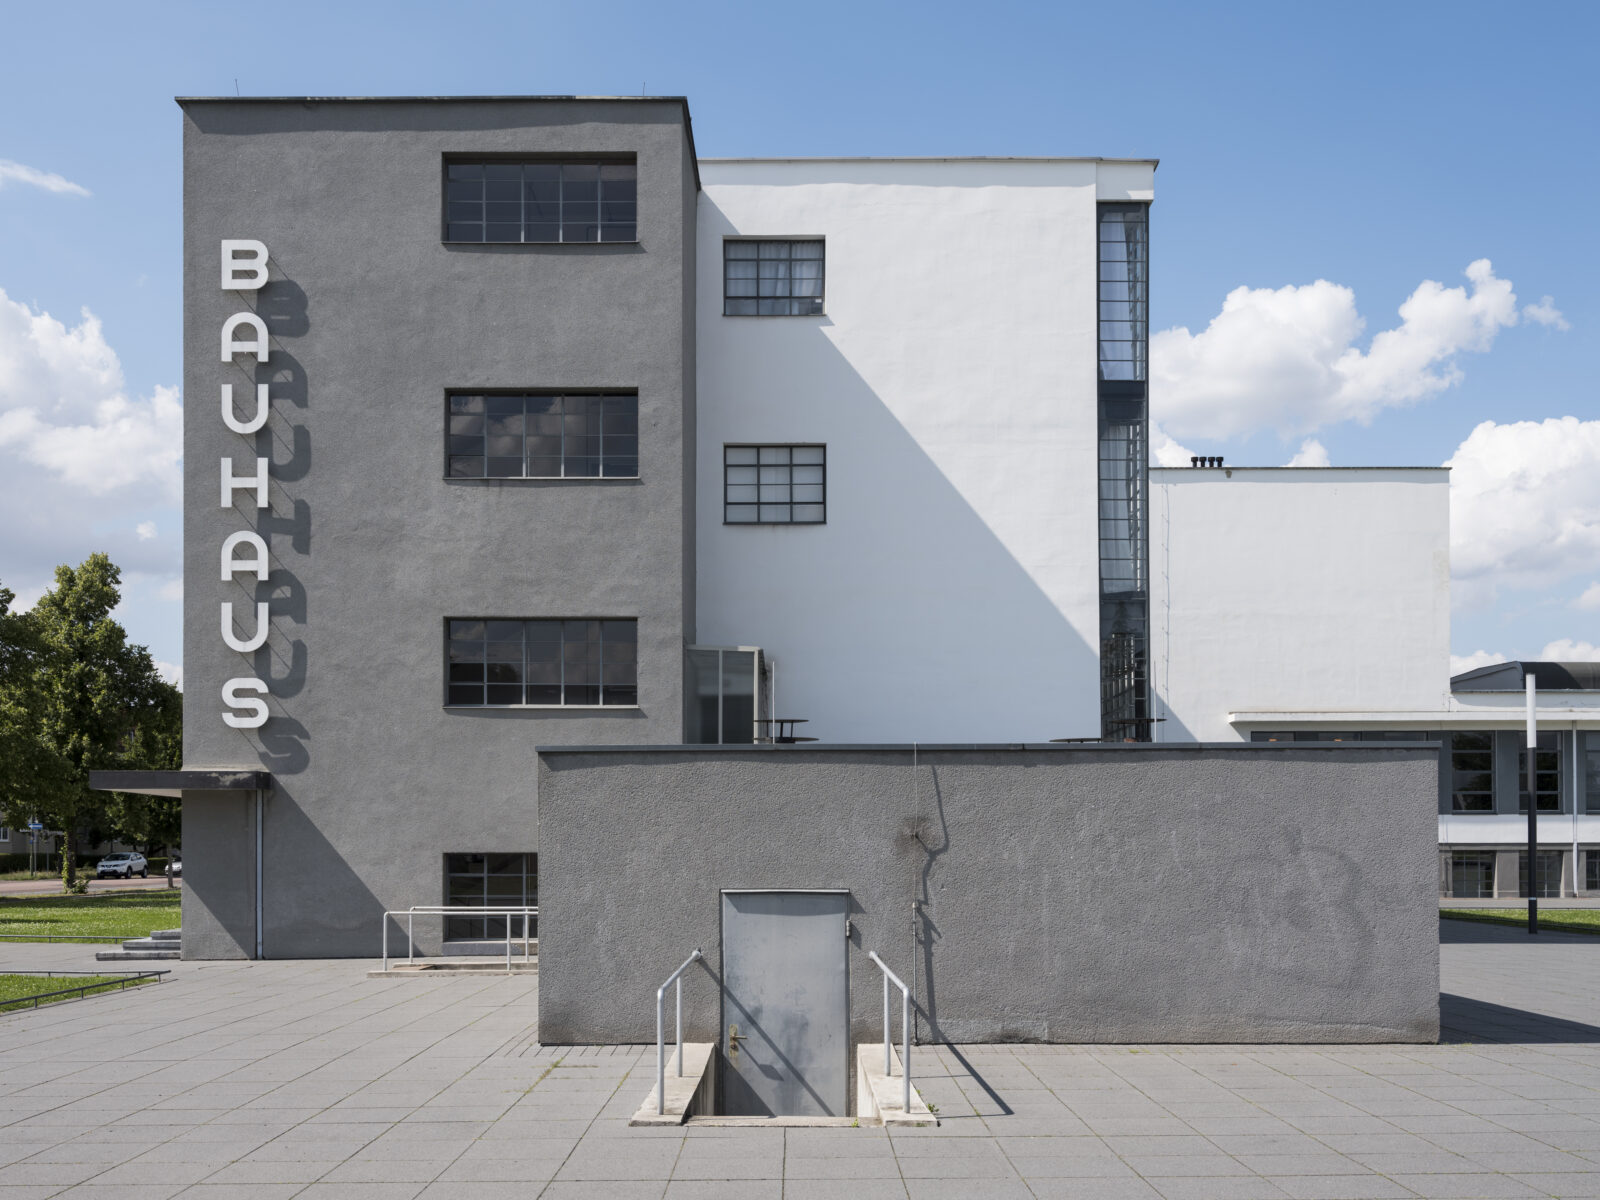 Frontaler Blick auf die Südfassade des historischen Bauhausgebäudes mit dem großen, vertikalen Bauhaus-Schriftzug, bei Sonnenschein und blauem Himmel.